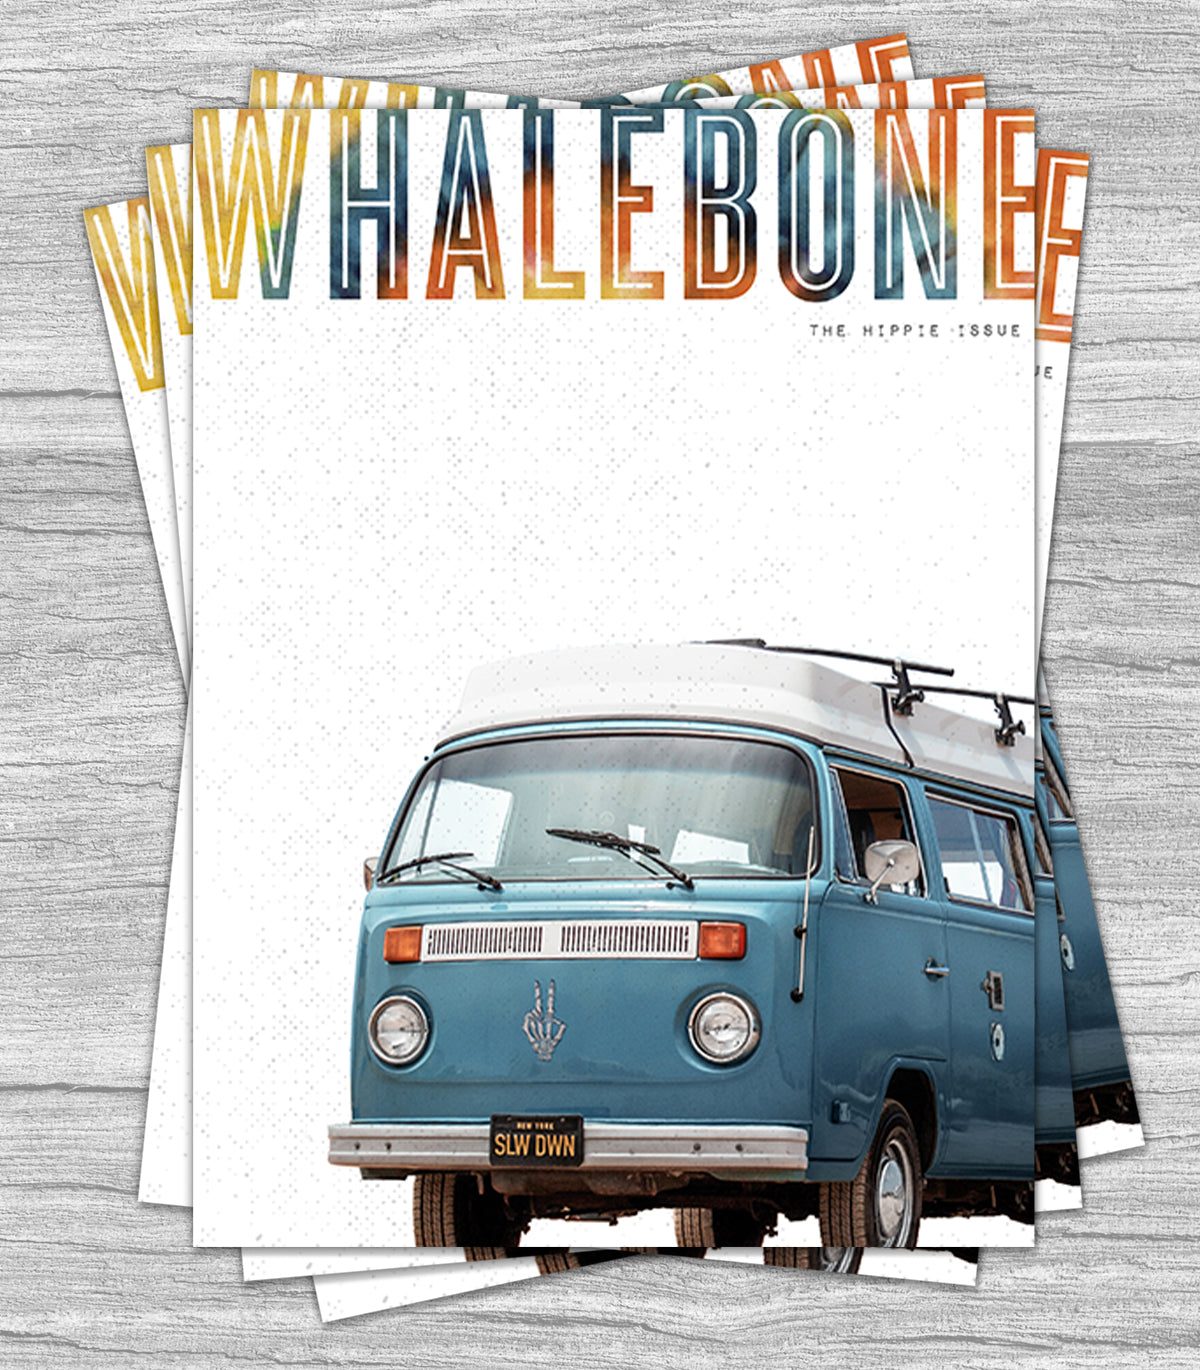 WHALEBONE - THE HIPPIE ISSUE: VOLUME 7 – ISSUE 5